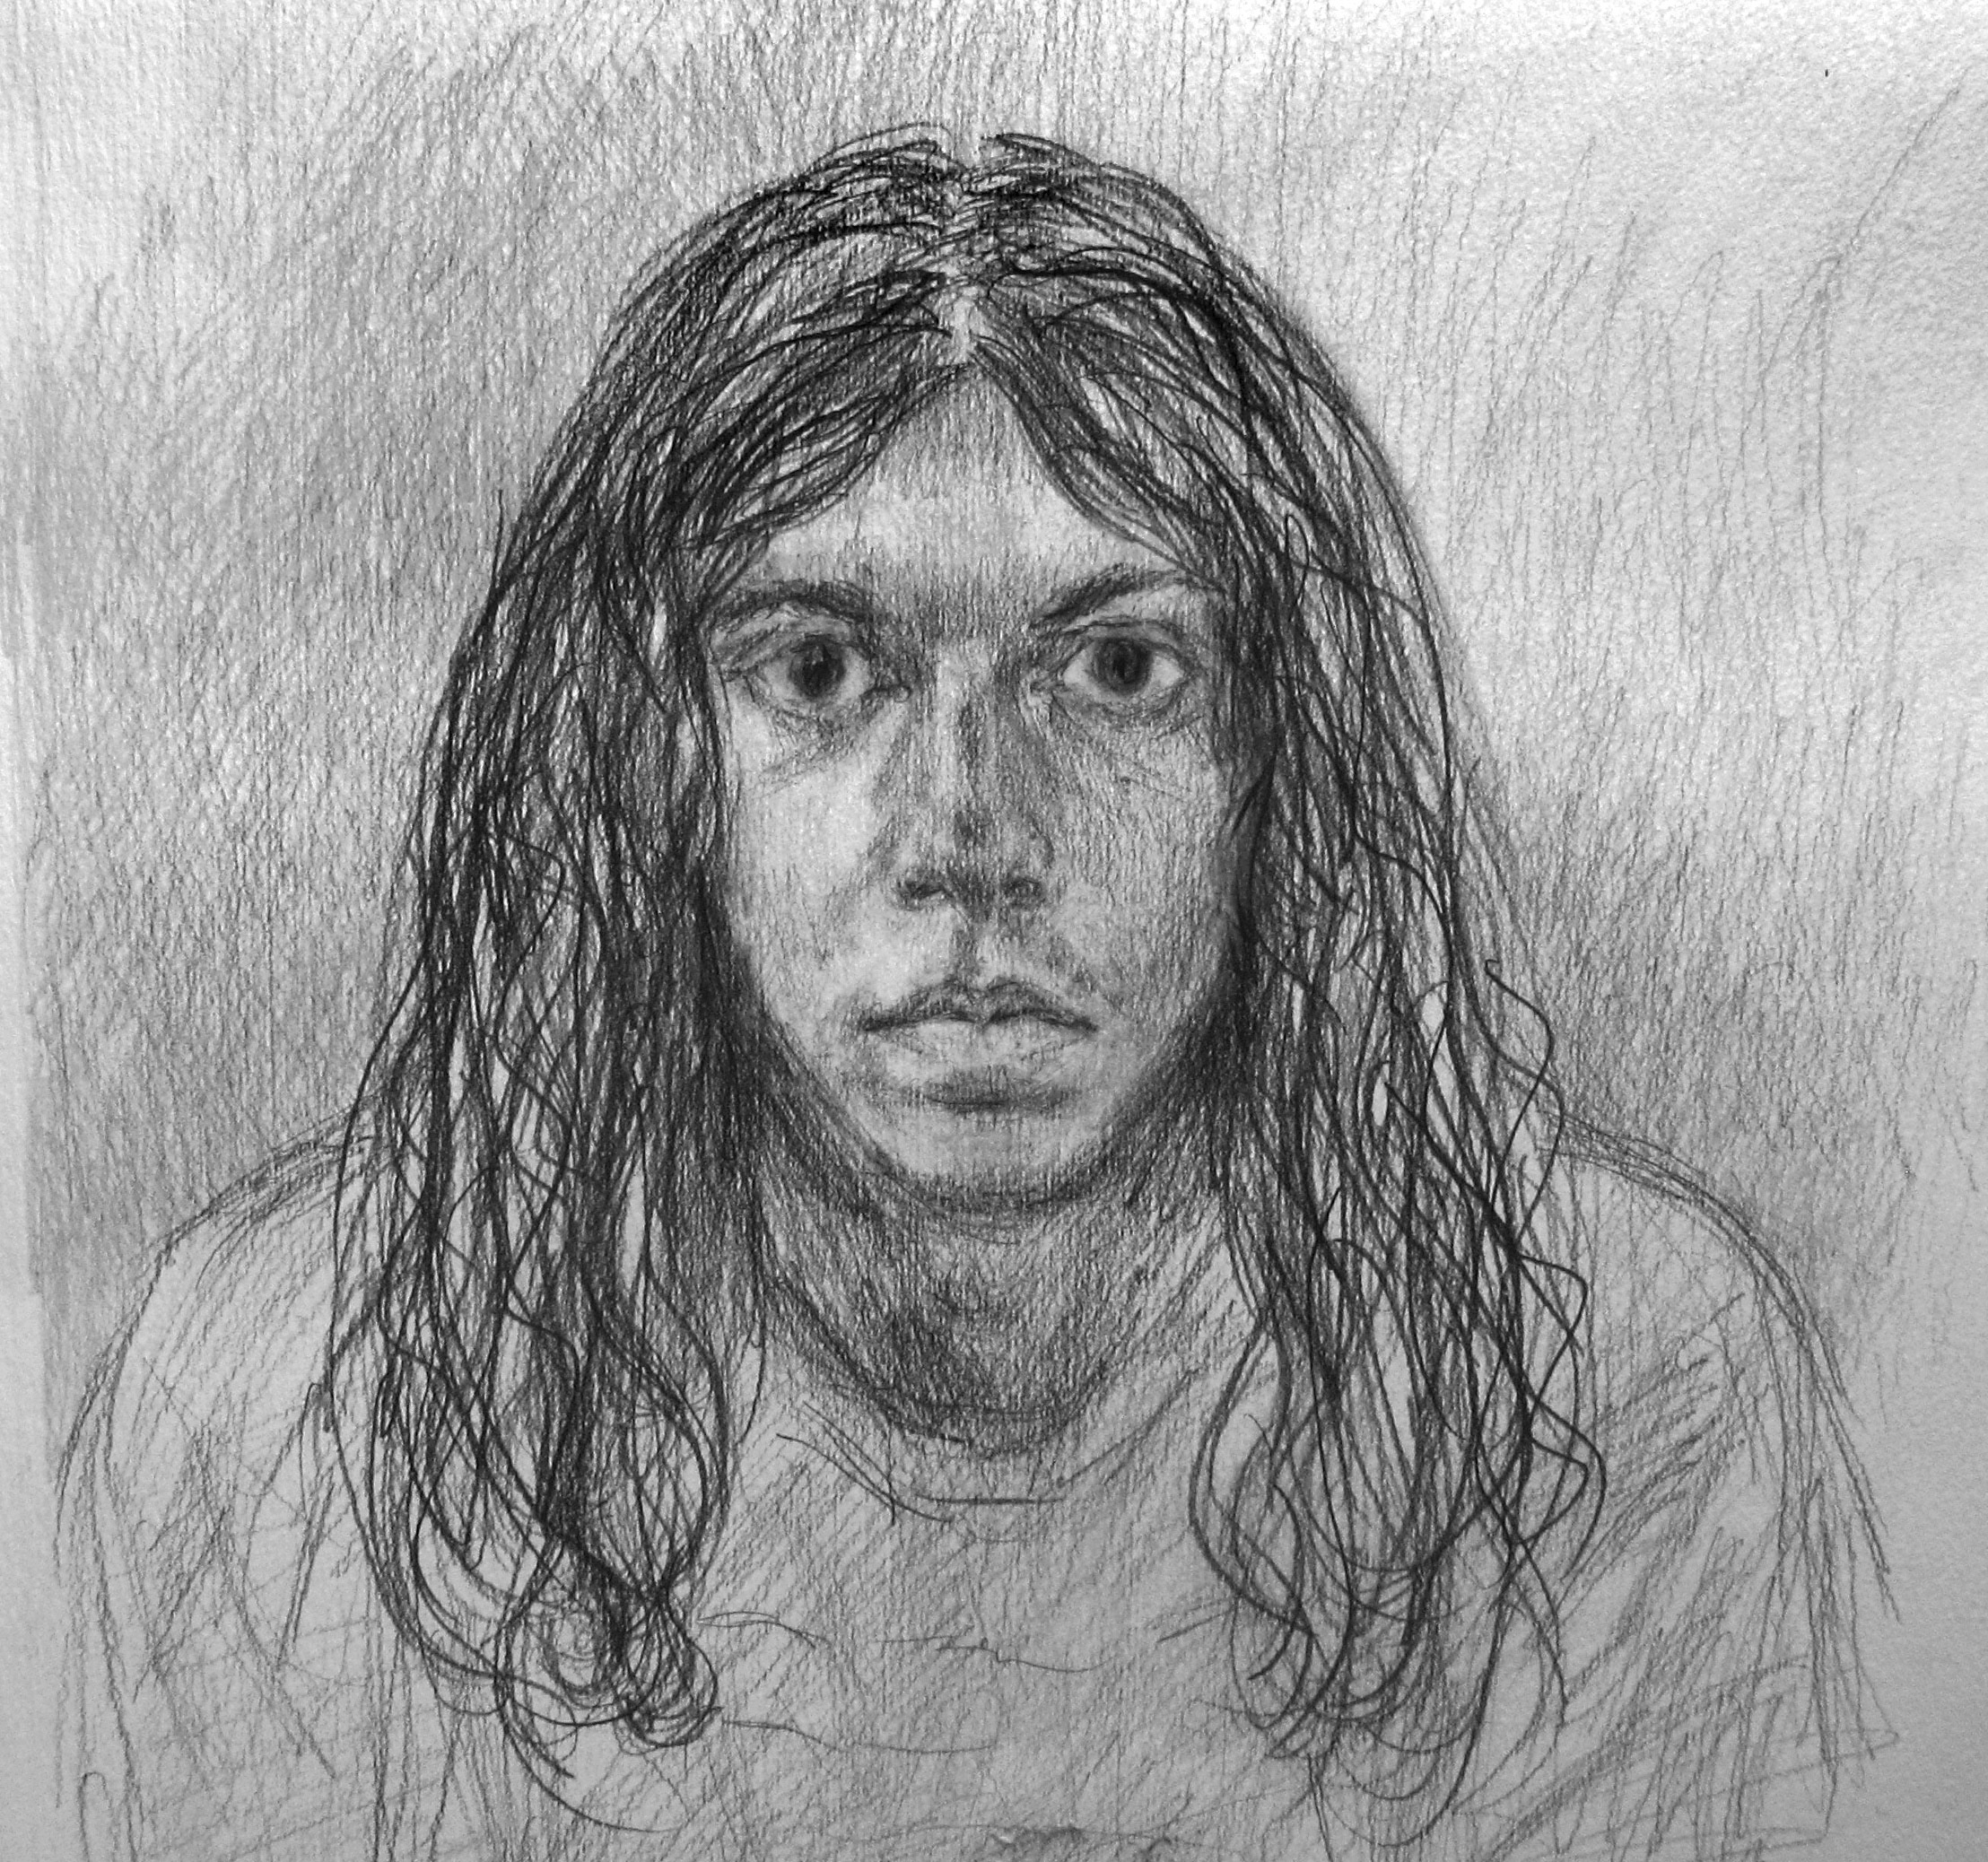    "Eduardo"&nbsp;2008   Pencil on paper 